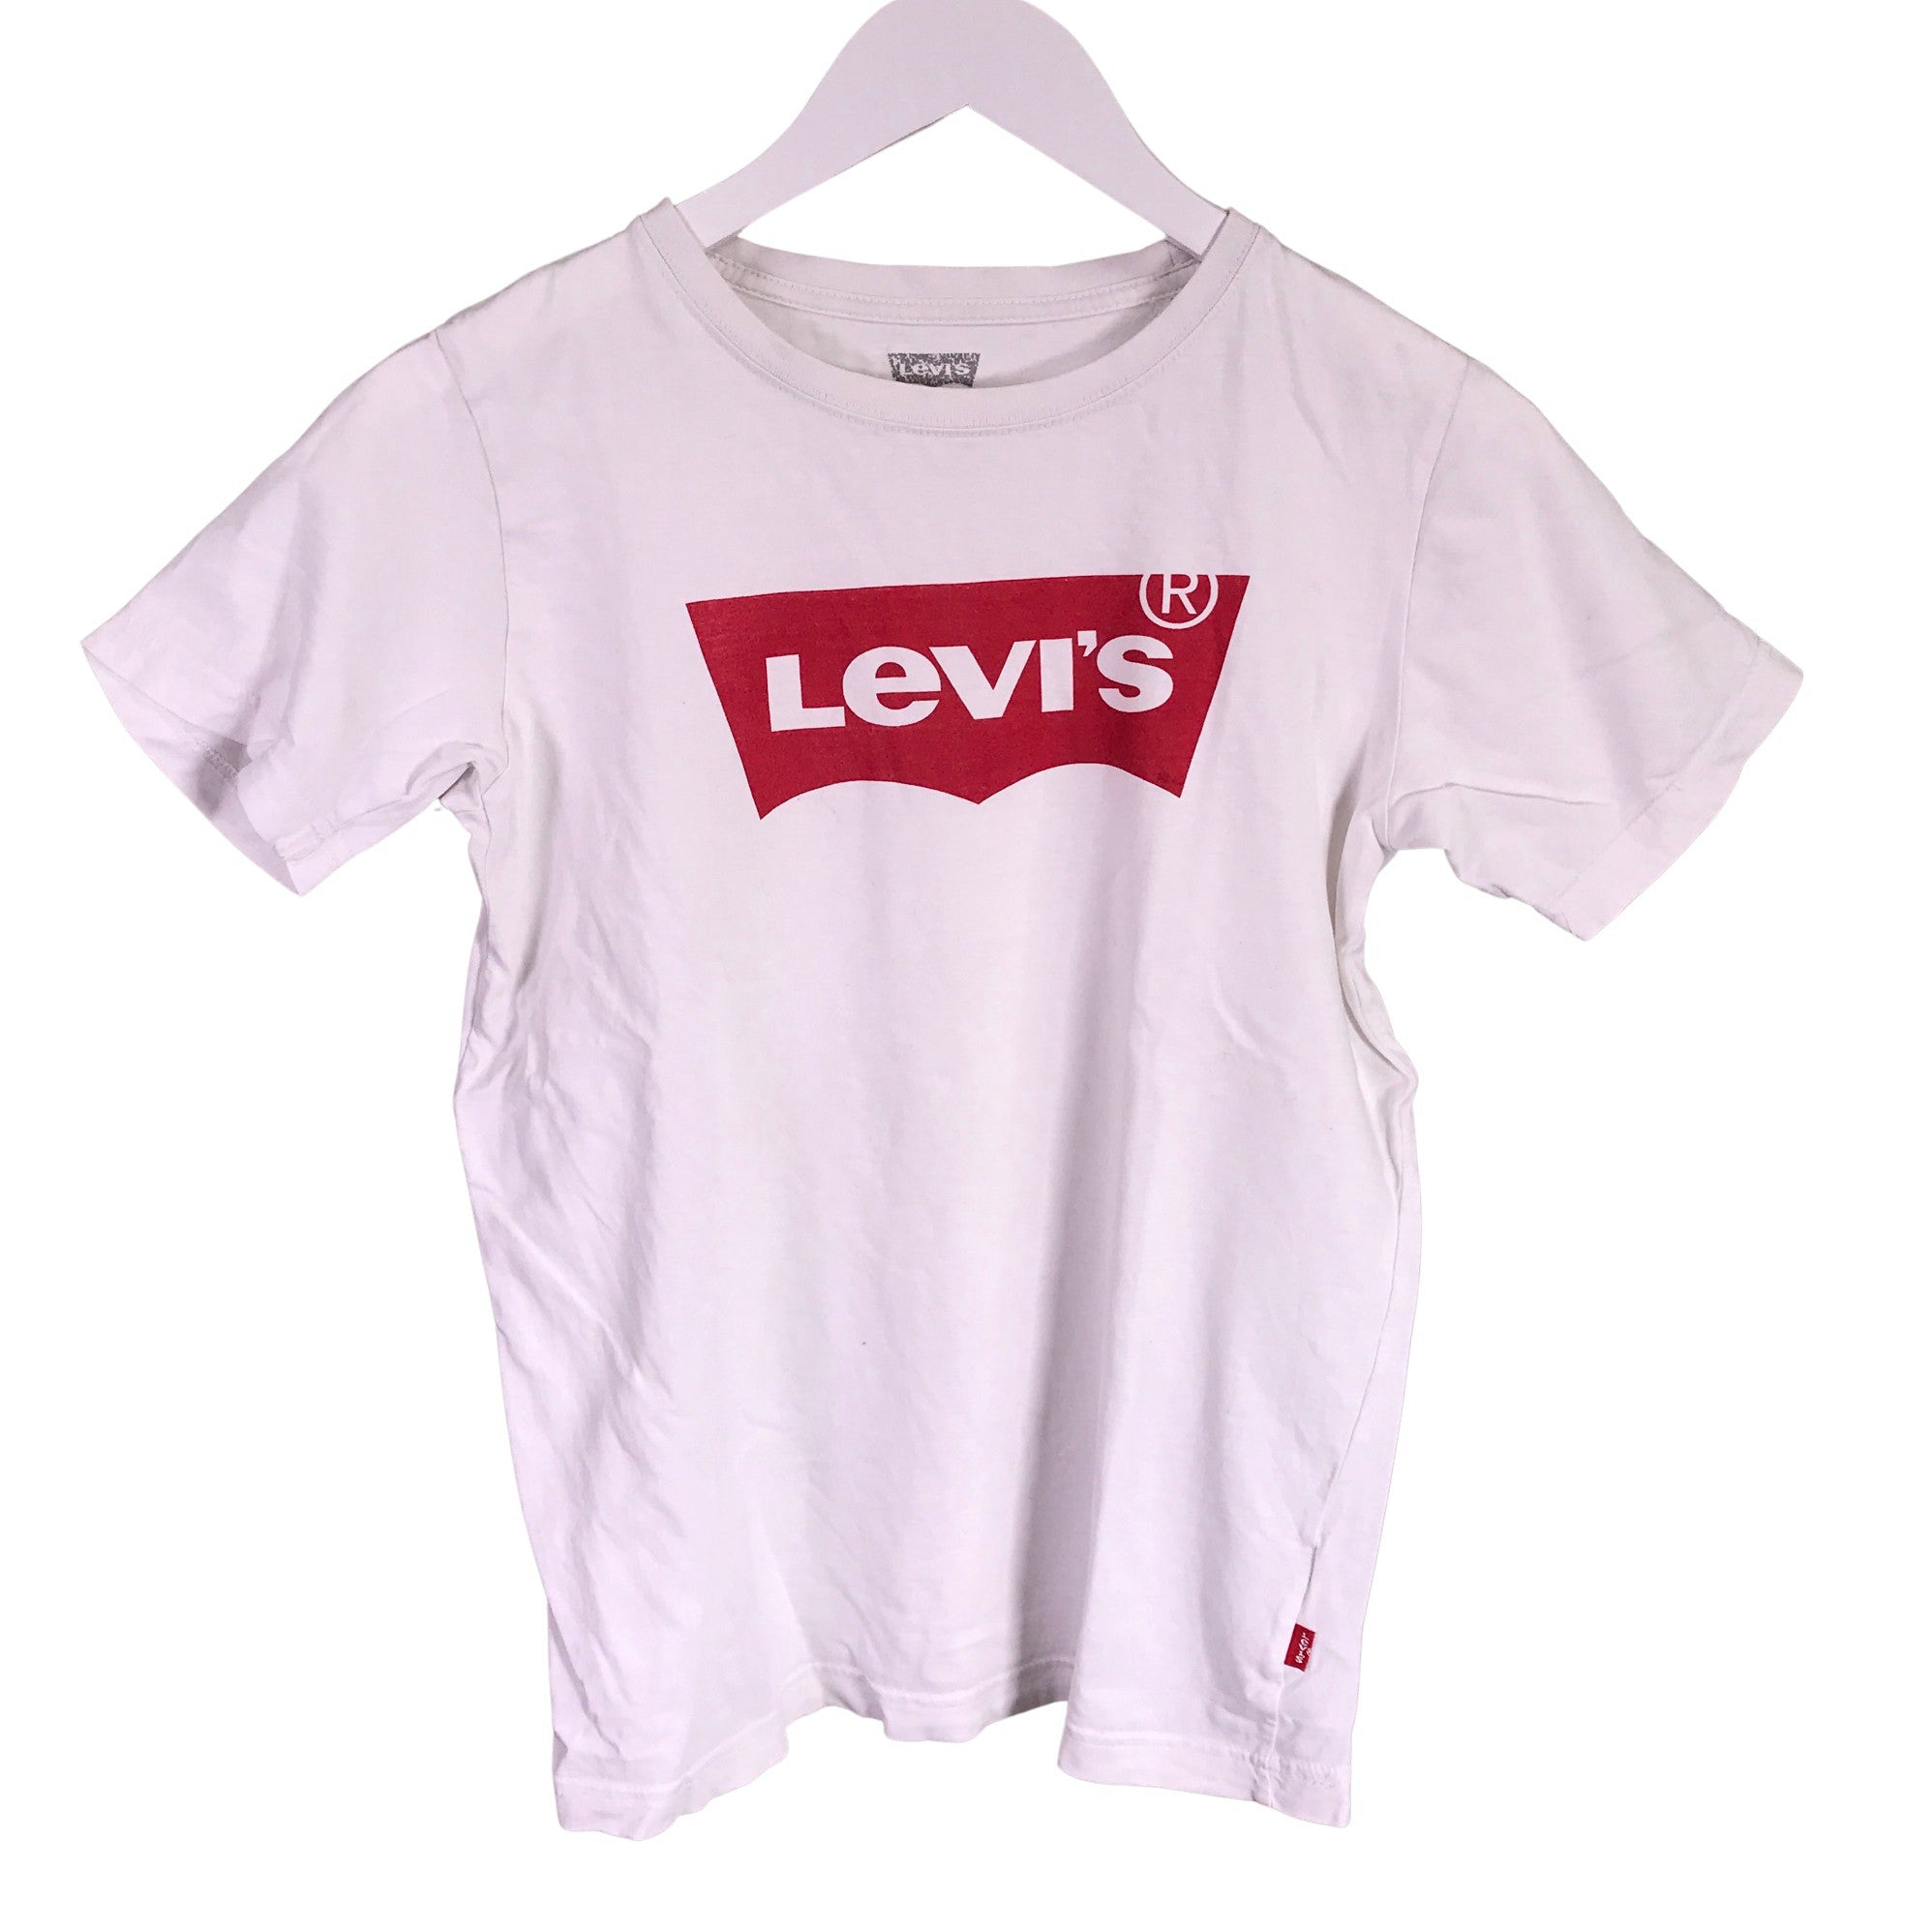 Unisex Levi's T-shirt, size 152 - 158 (White) | Emmy